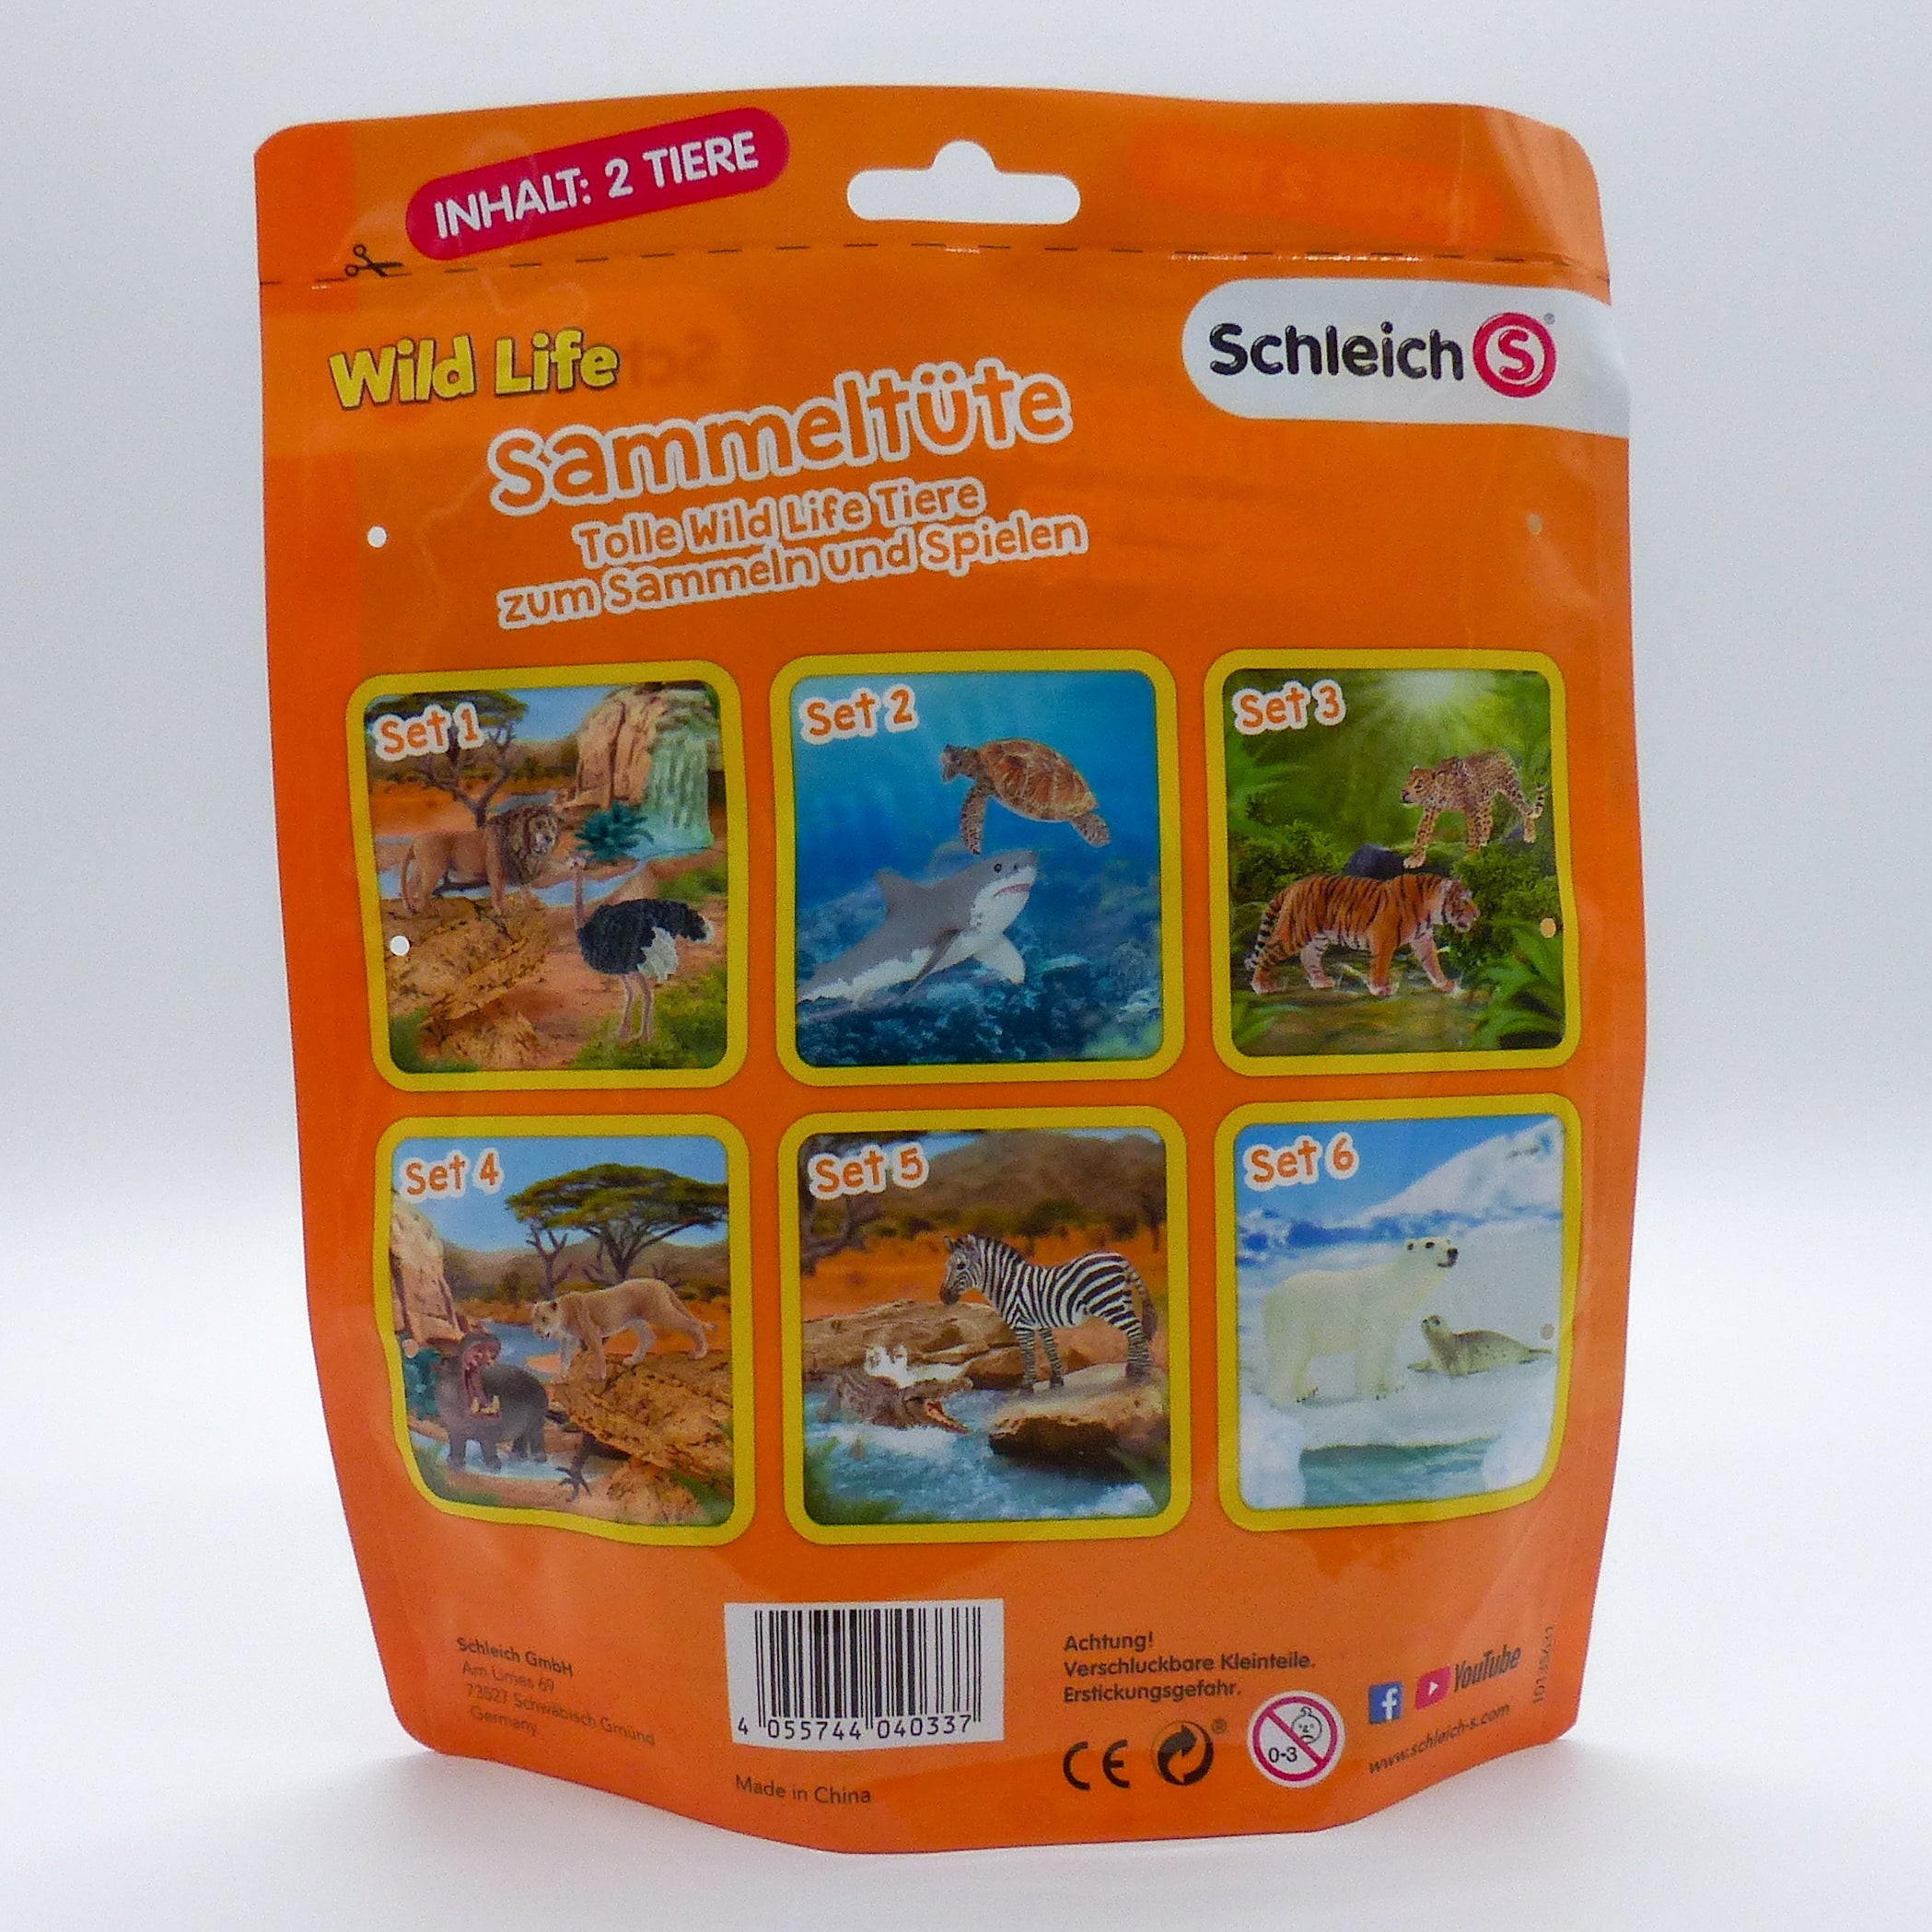 Schleich 87677 Wild Life Sammeltüte Set 5  Schleich   